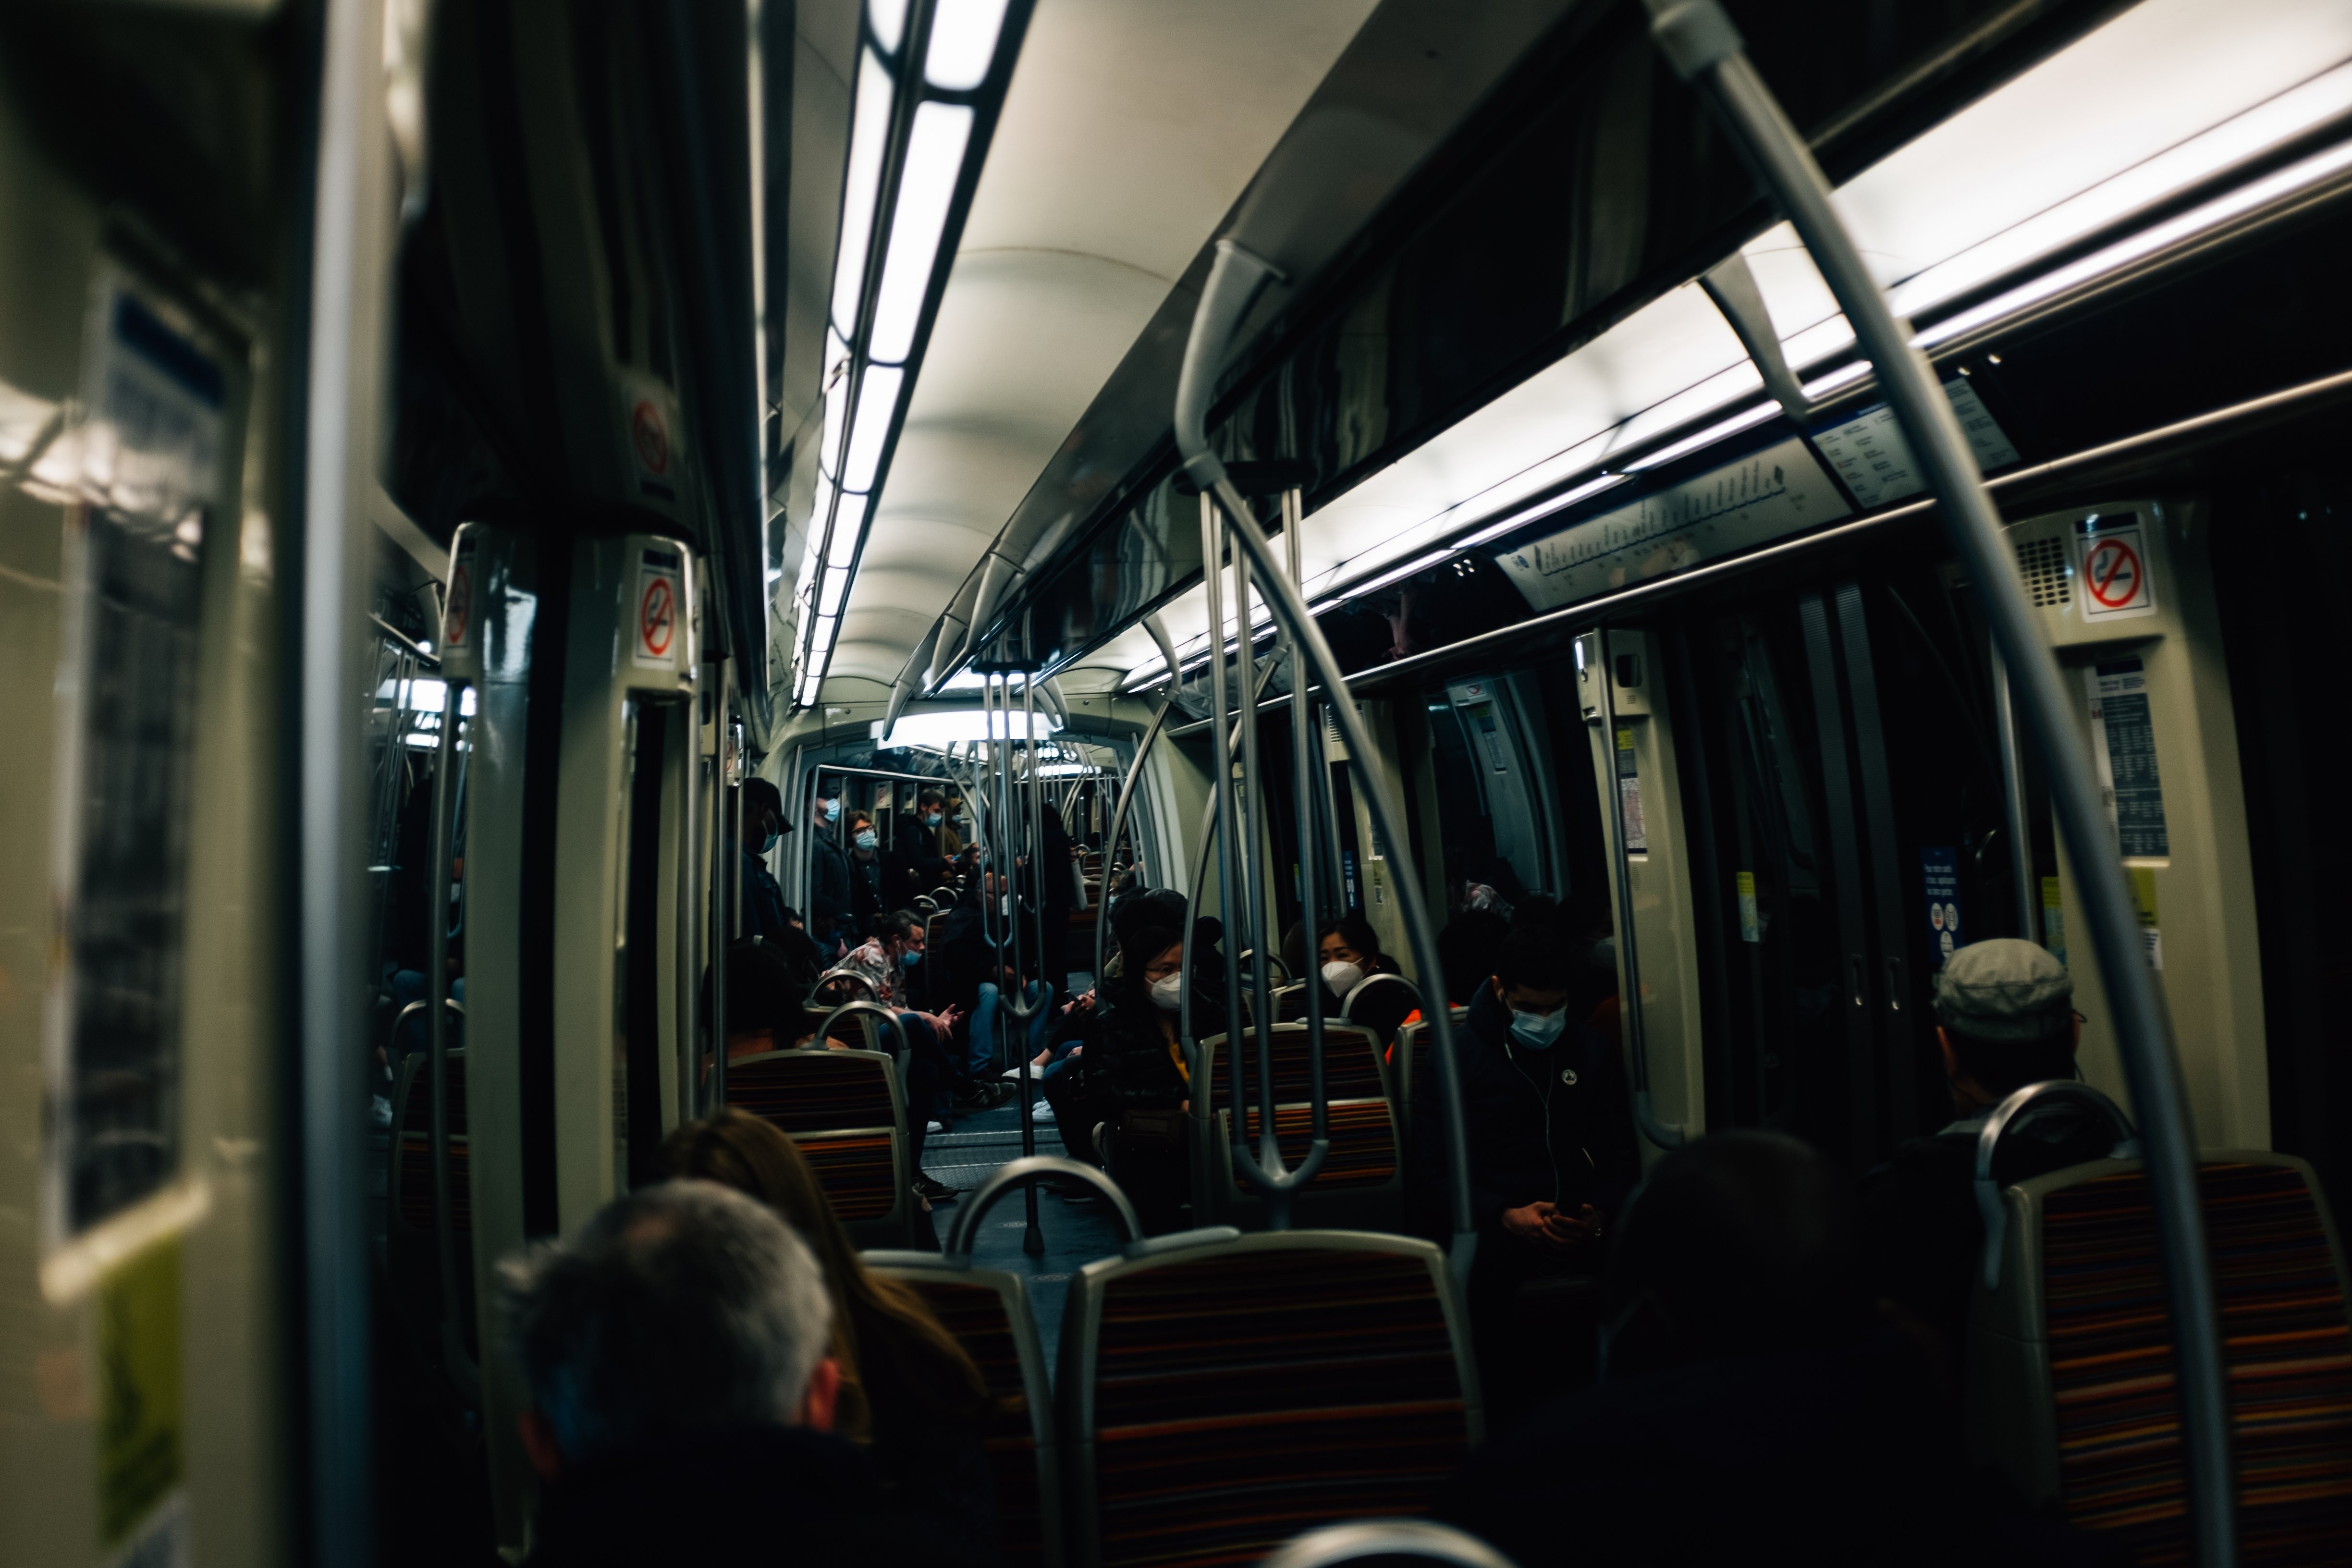 Interior Kendaraan Transit Gelap Dengan Foto Orang Terdekat 